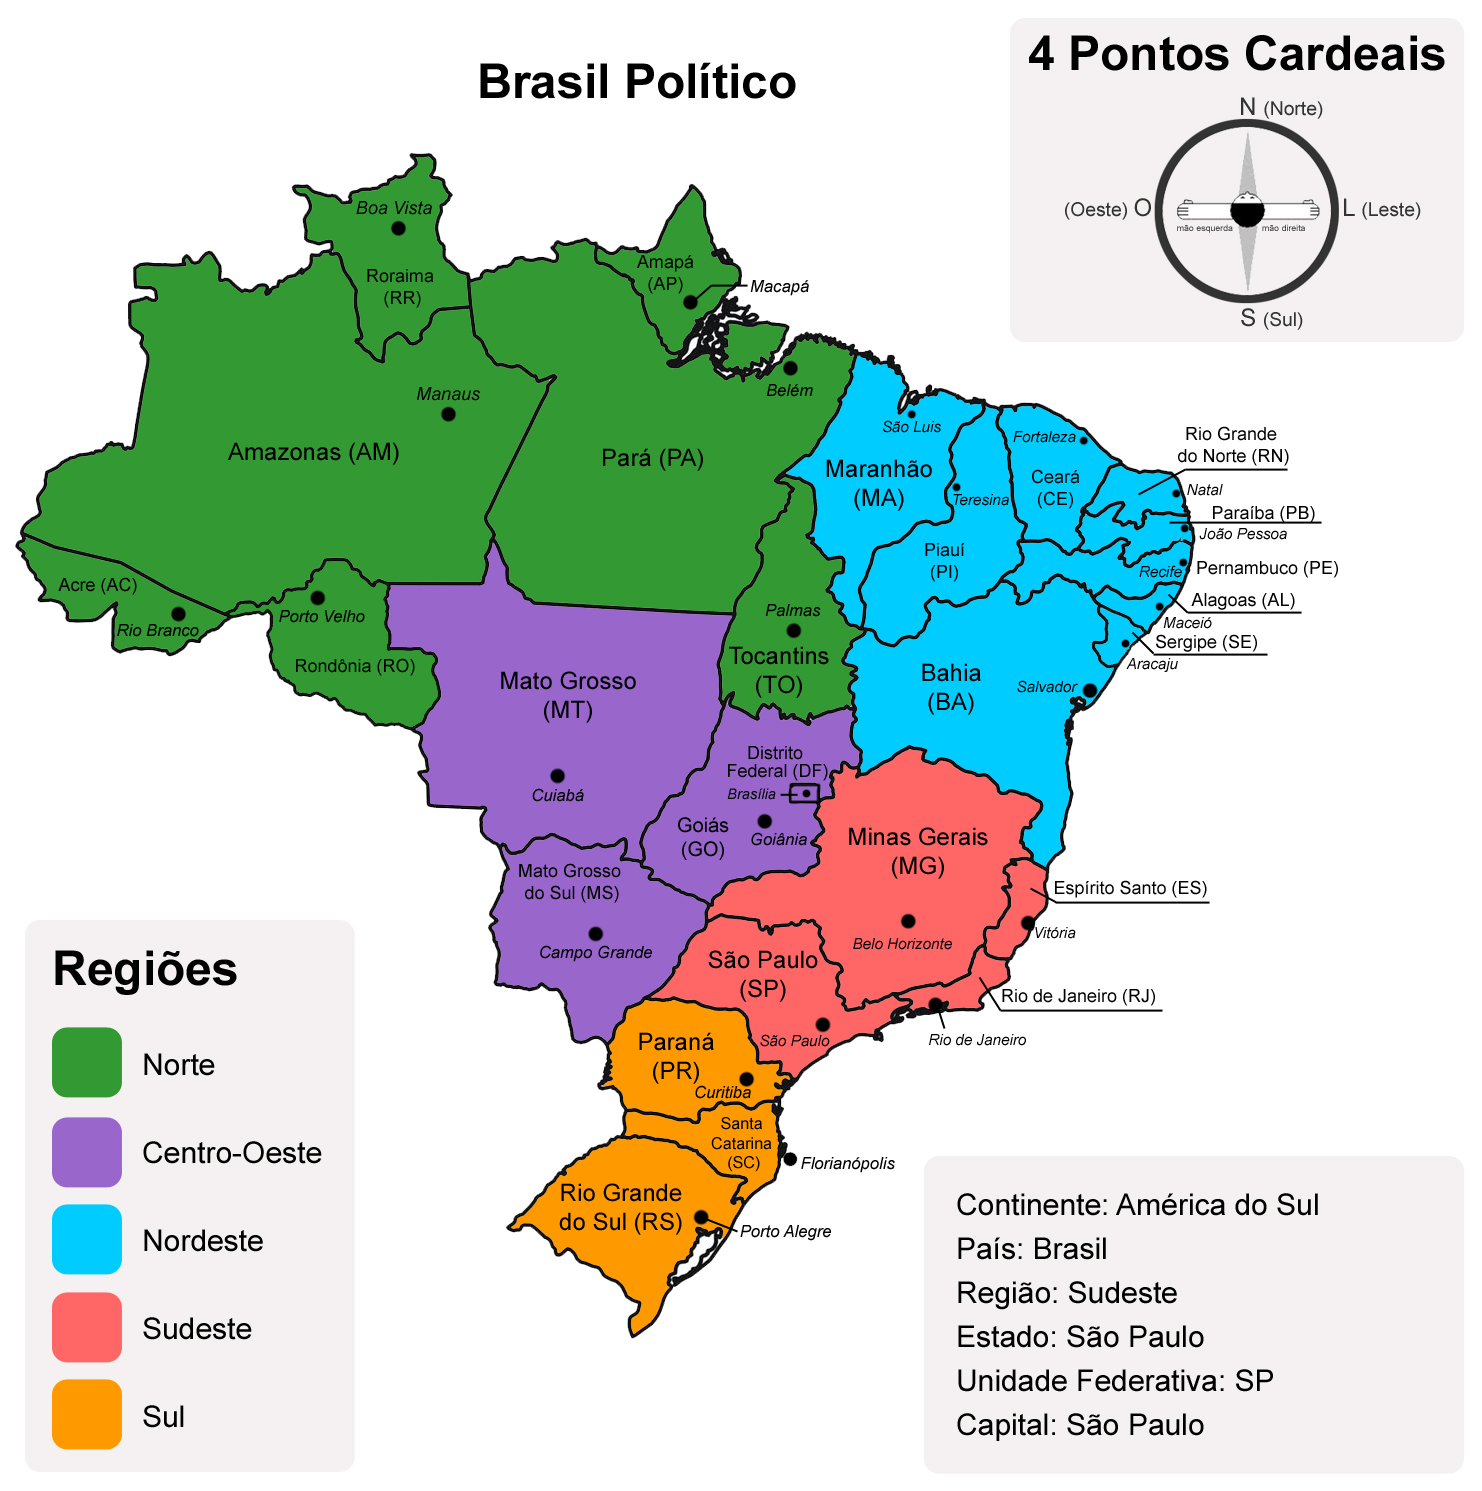 Viajando na Geo: Brasil: Regiões, estados, siglas e capitais